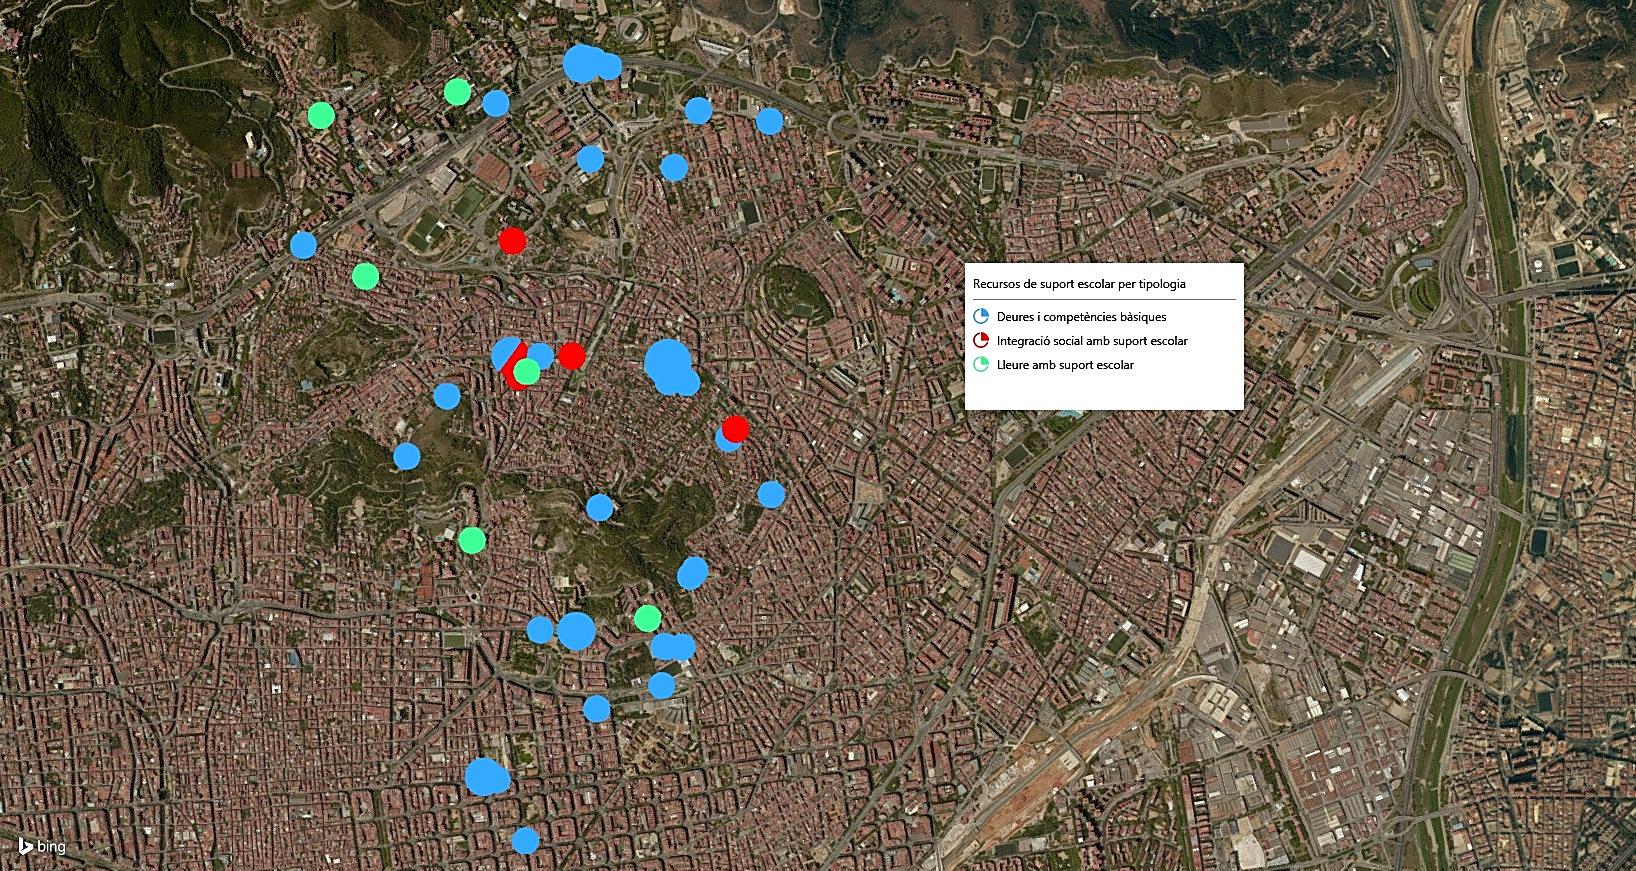 Mapa de recursos de suport a Barcelona Recursos de suport en el districte per tipologia El mapa mostra la ubicació dels recursos de suport del districte, tant els que es realitzen en centres